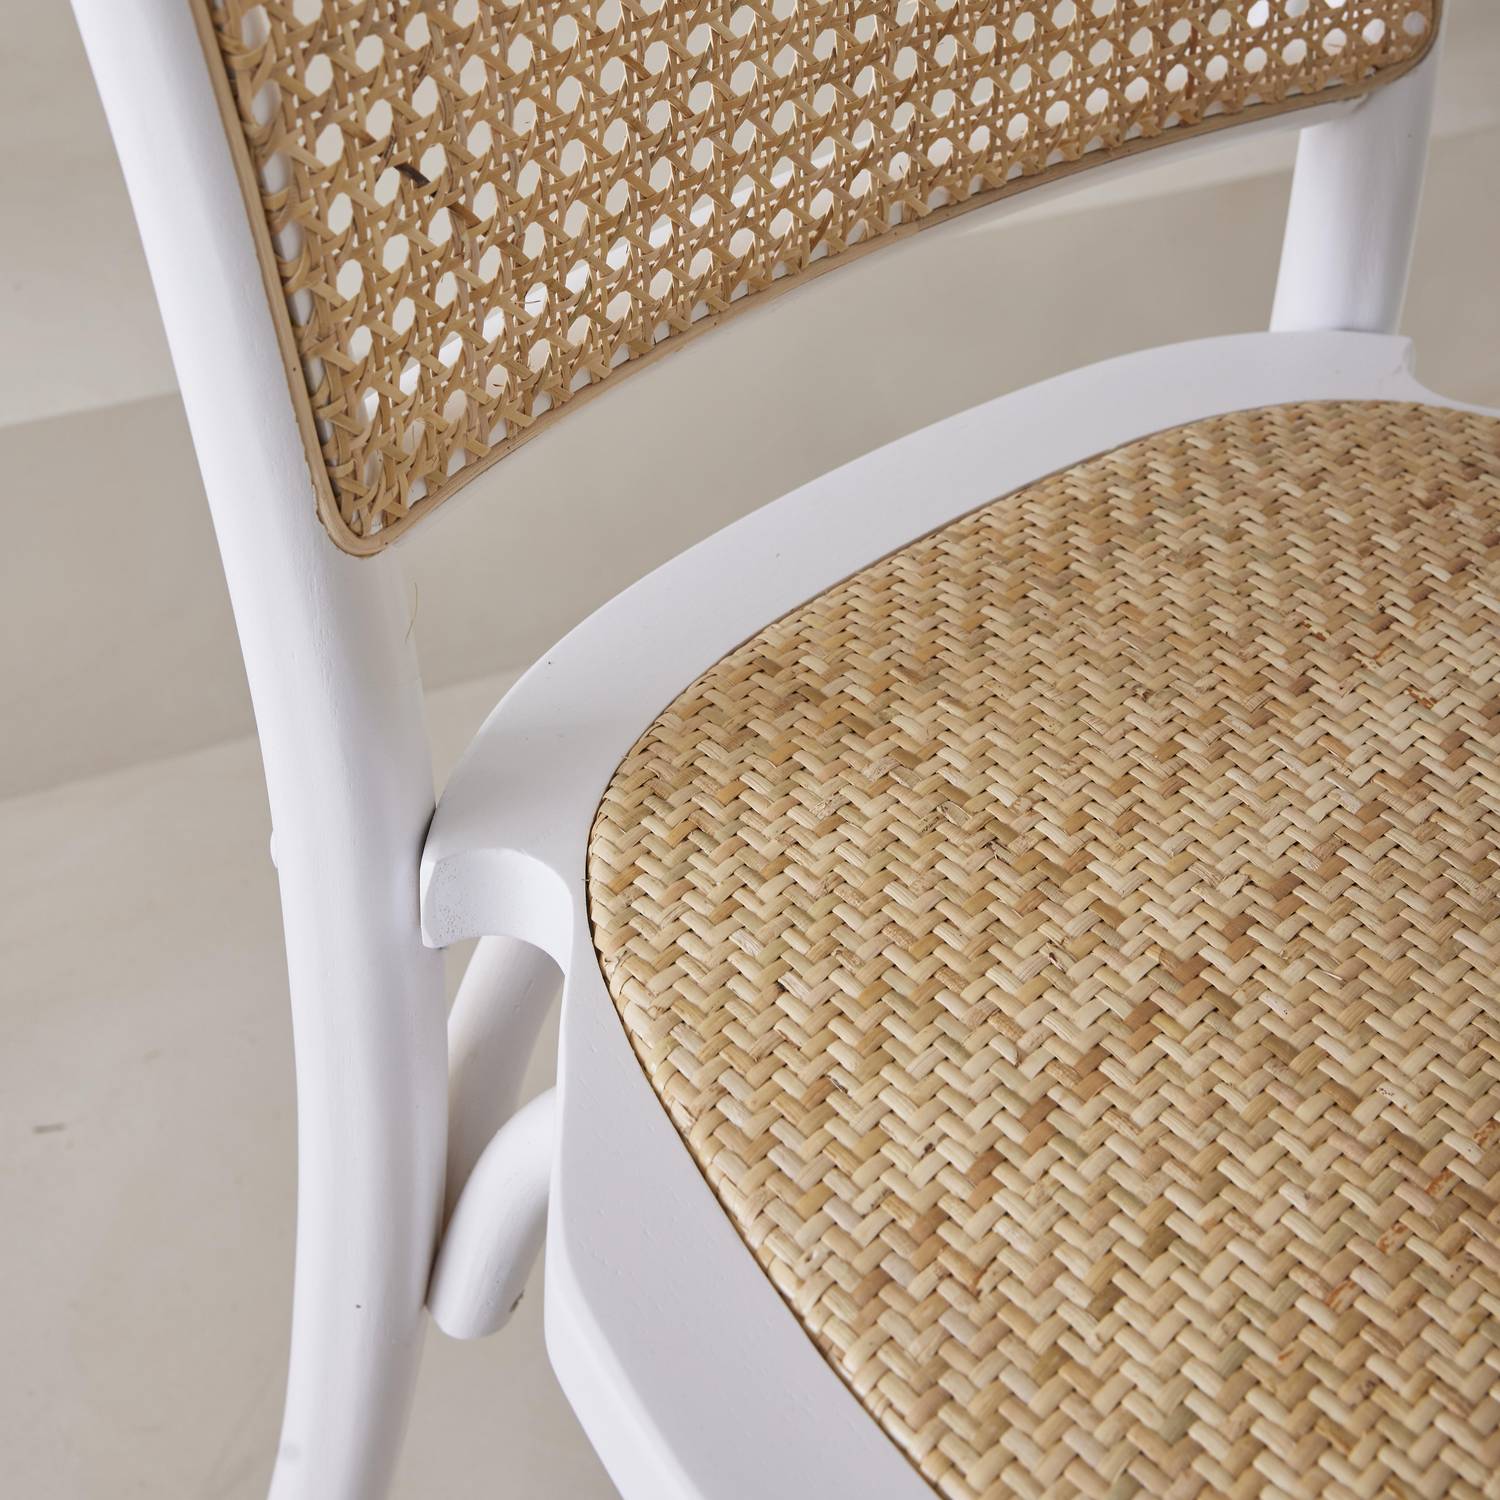 Set van twee vintage witte houten stoelen met rotan zitvlak en rugleuning Photo3